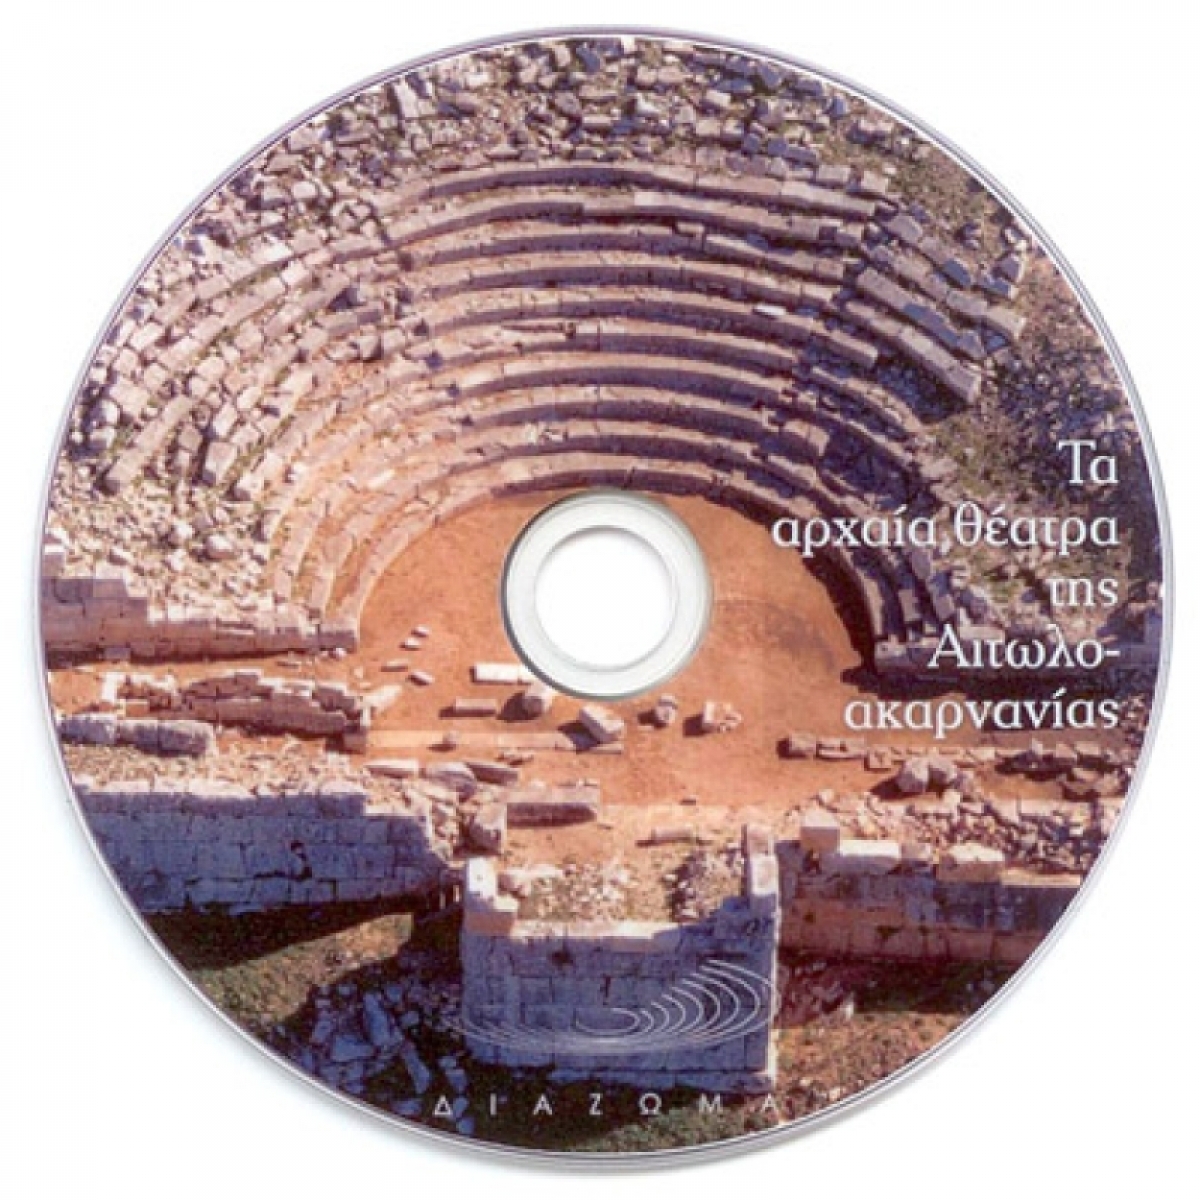 Ντοκιμαντέρ για τα αρχαία θέατρα της Αιτωλοακαρνανίας